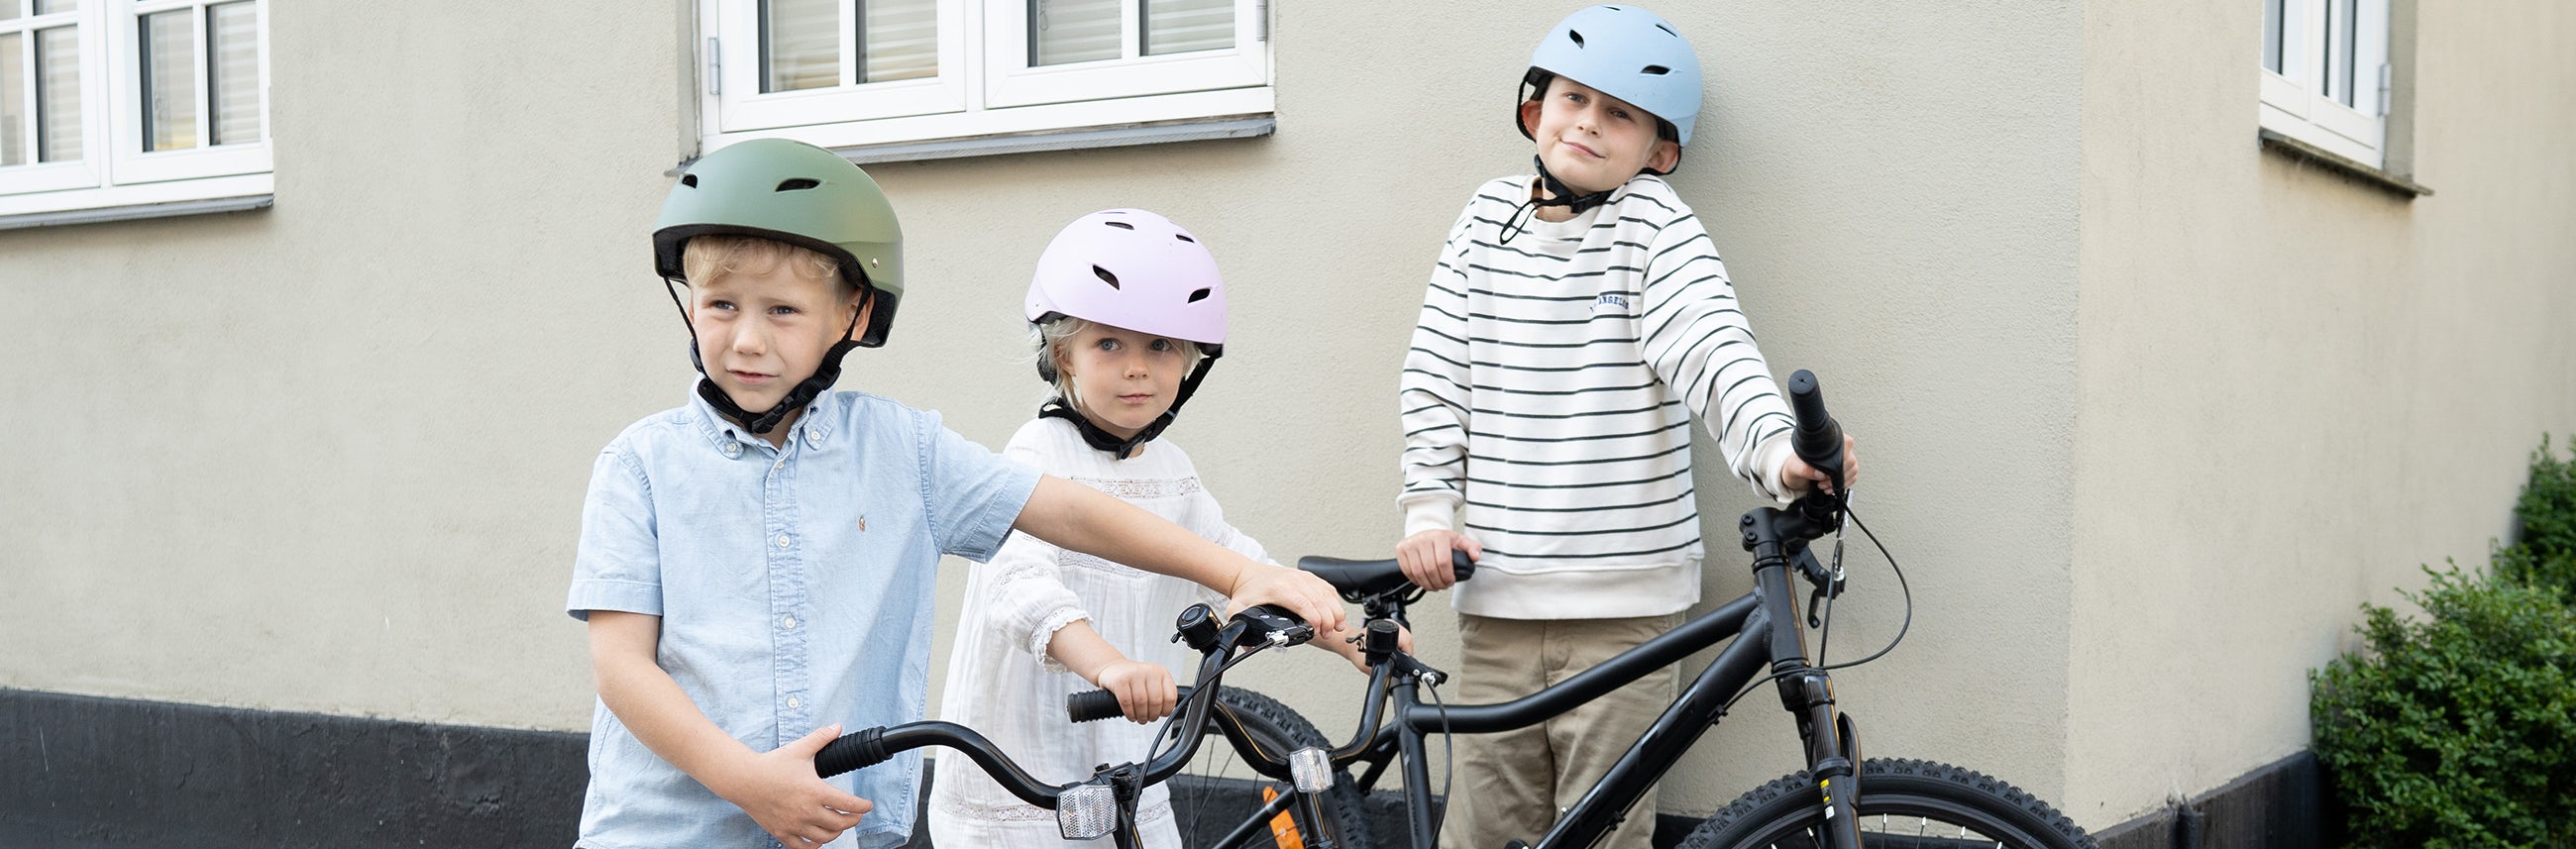 Sådan du den børnecykel | Bilka.dk